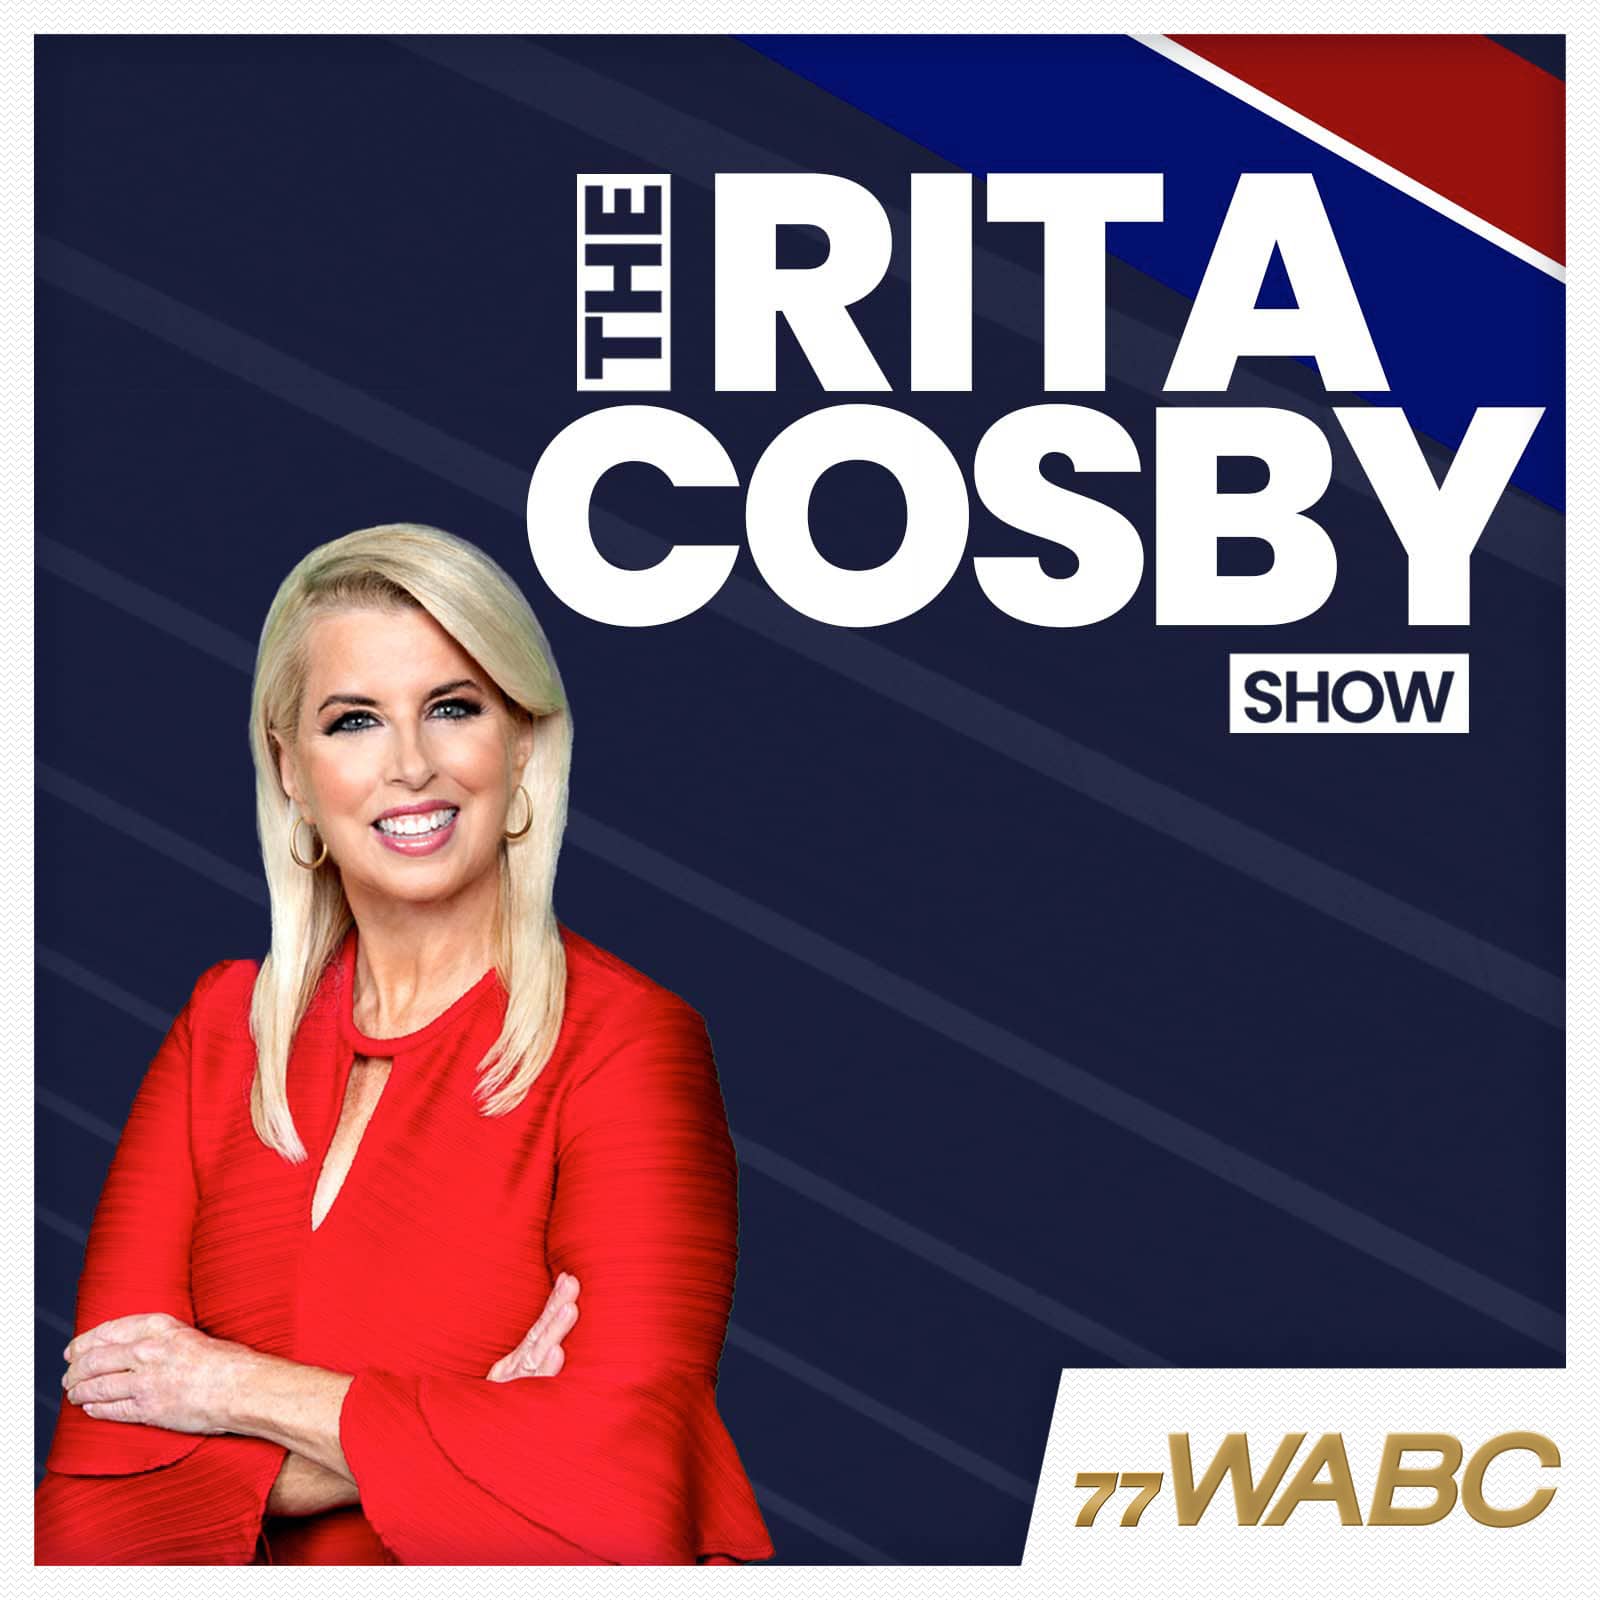 rita-cosby-podcast-new-logo88722